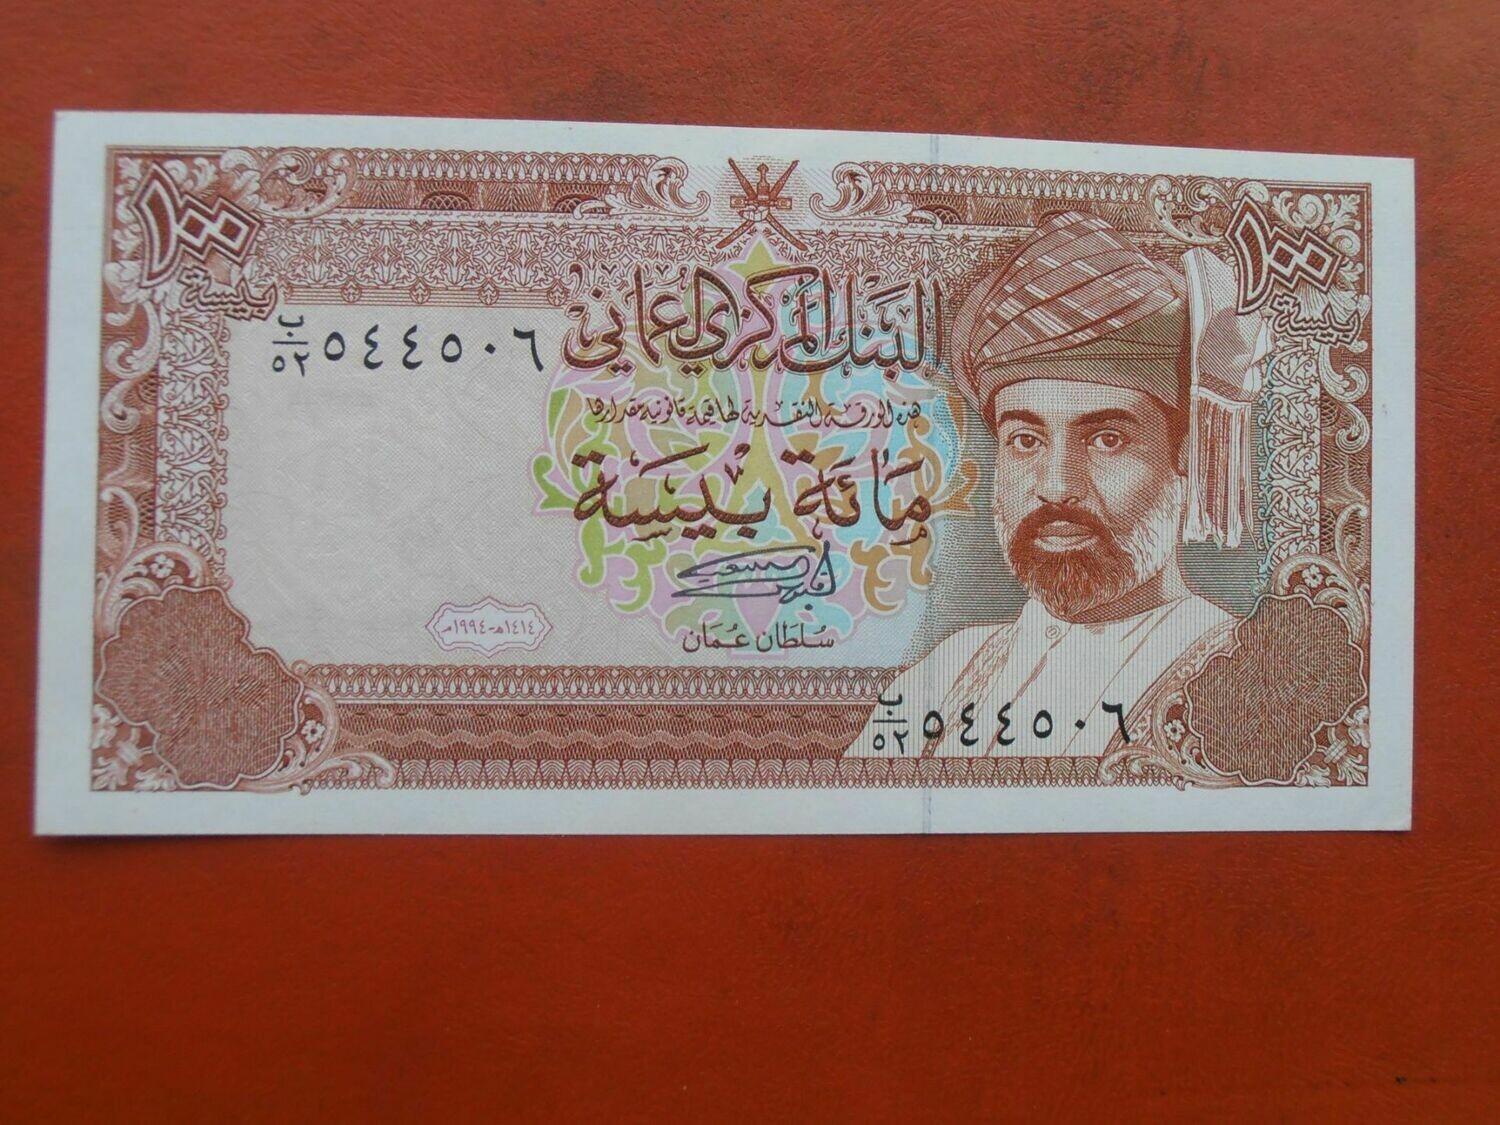 Oman 100 Baisa - 1994